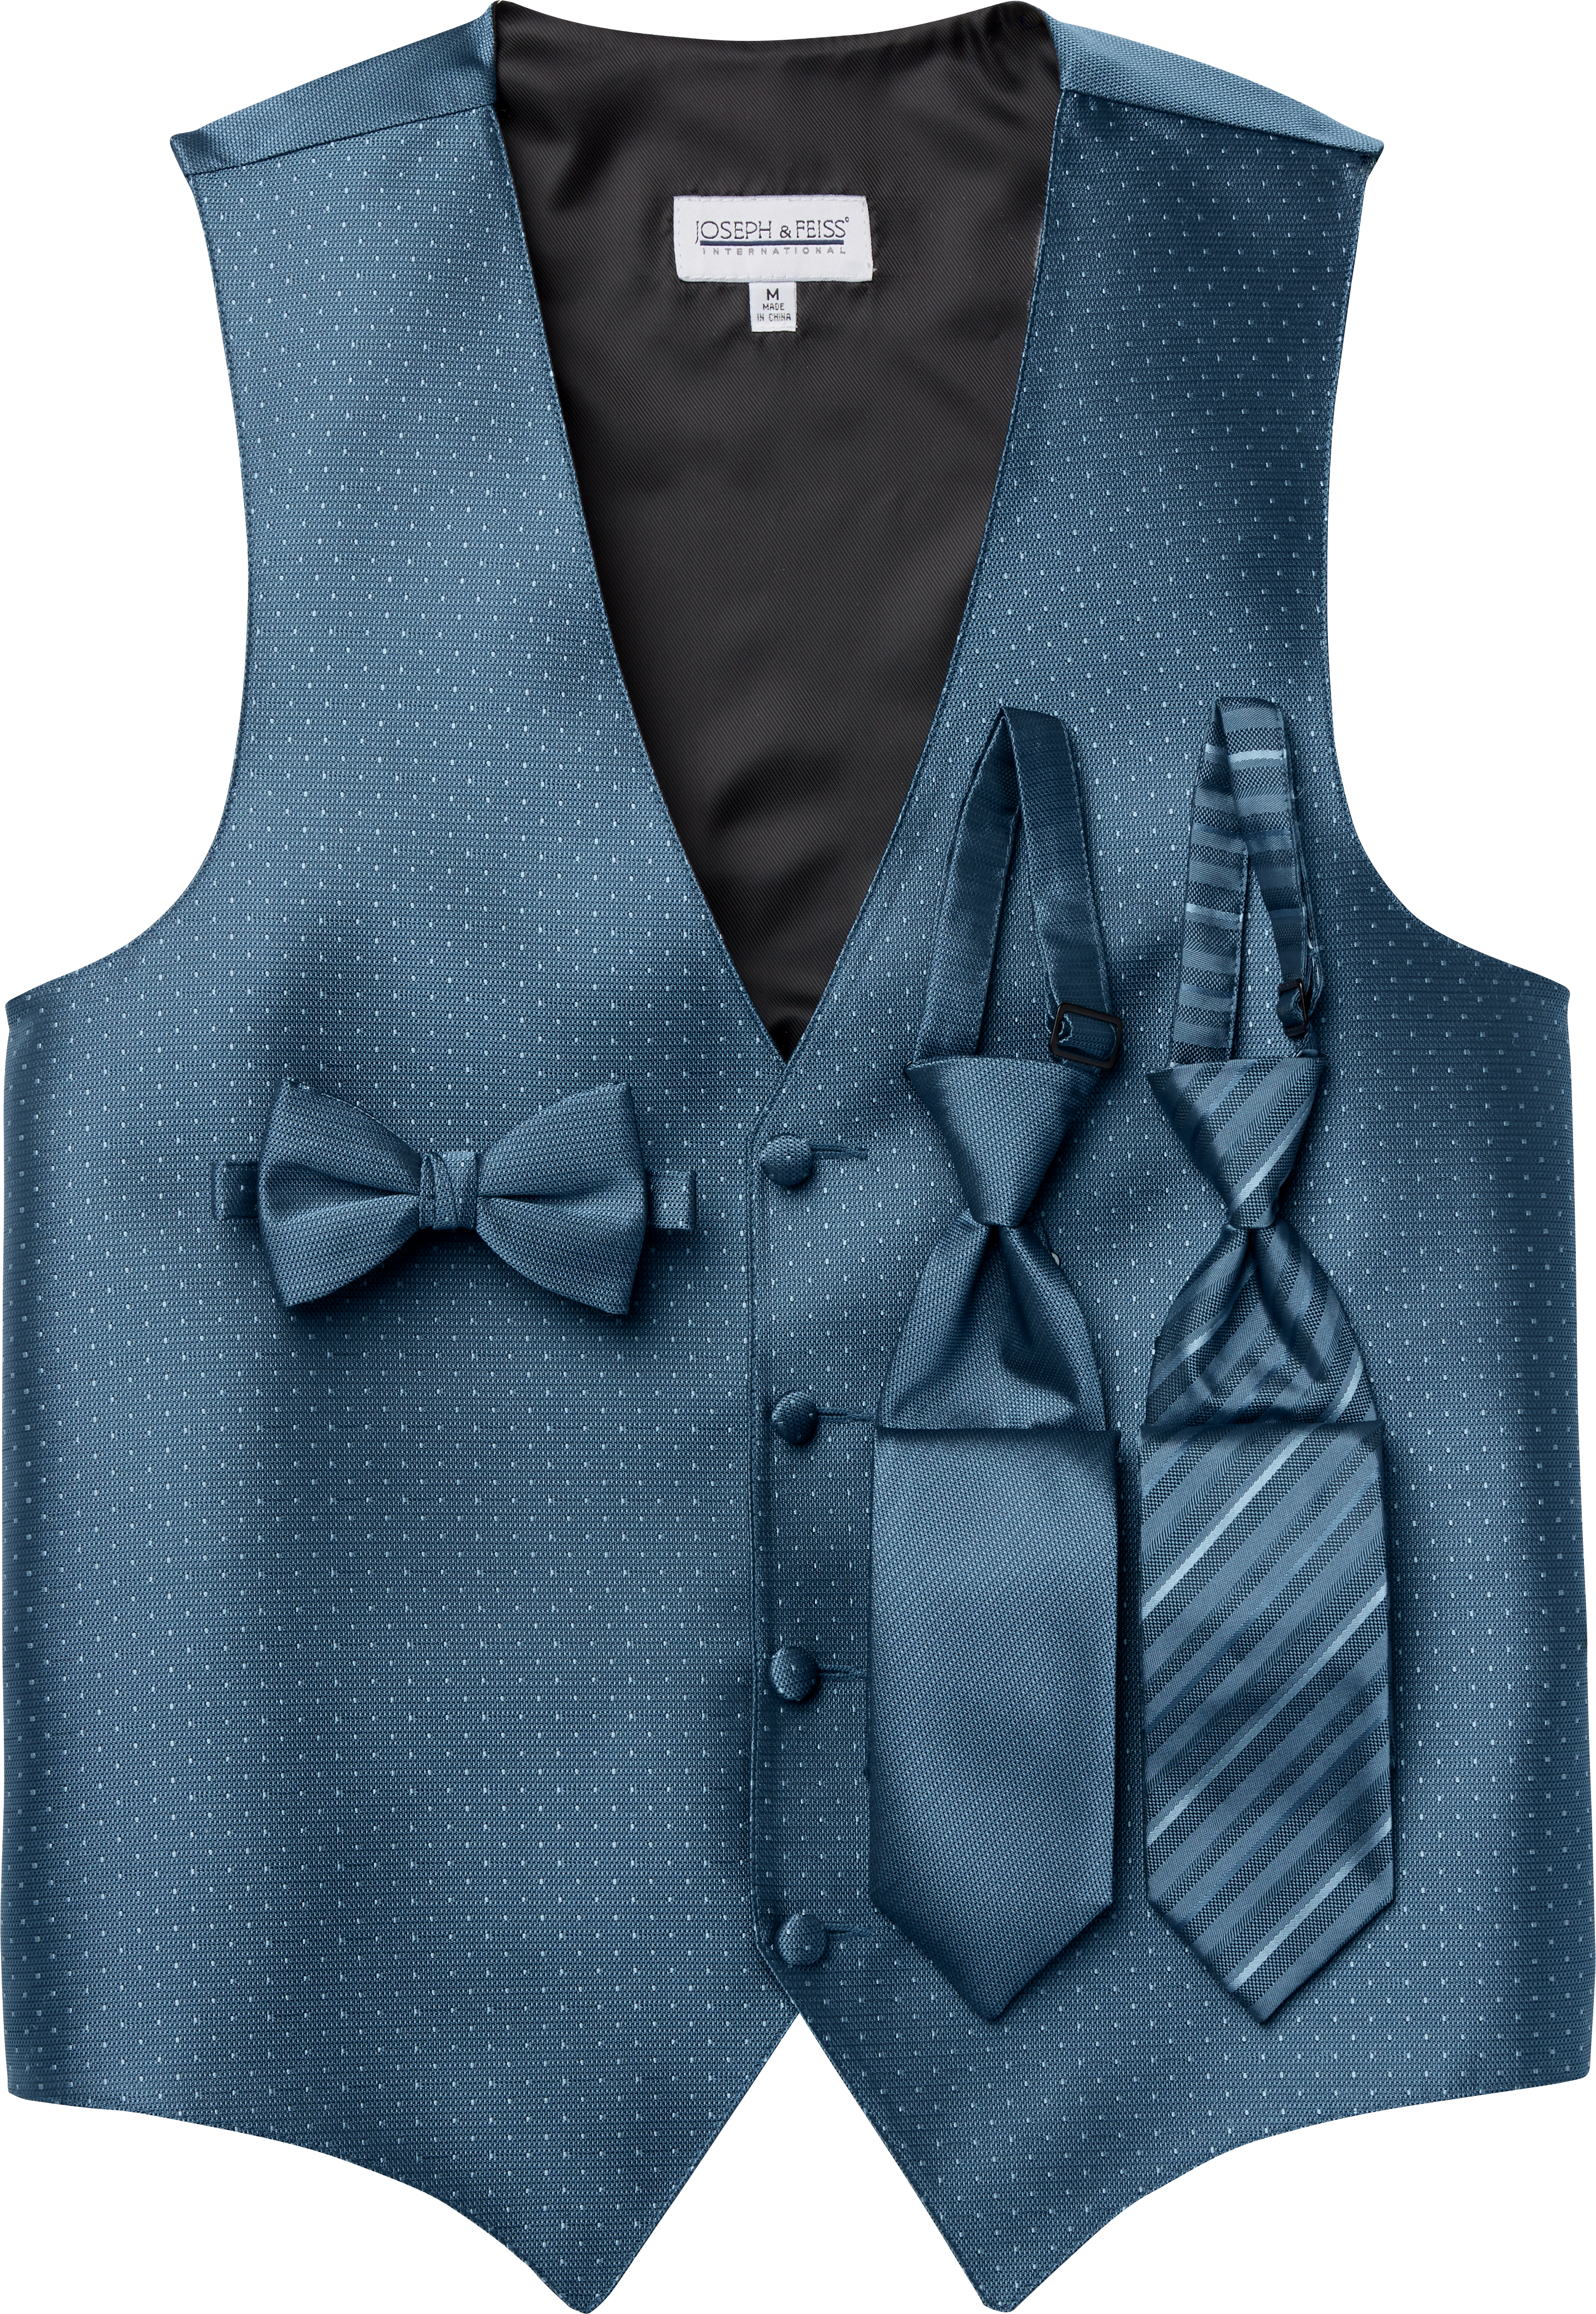 Mens Periwnkle Light Blue Diamond Tuxedo Fullback Vest & Tie Wedding Large Long